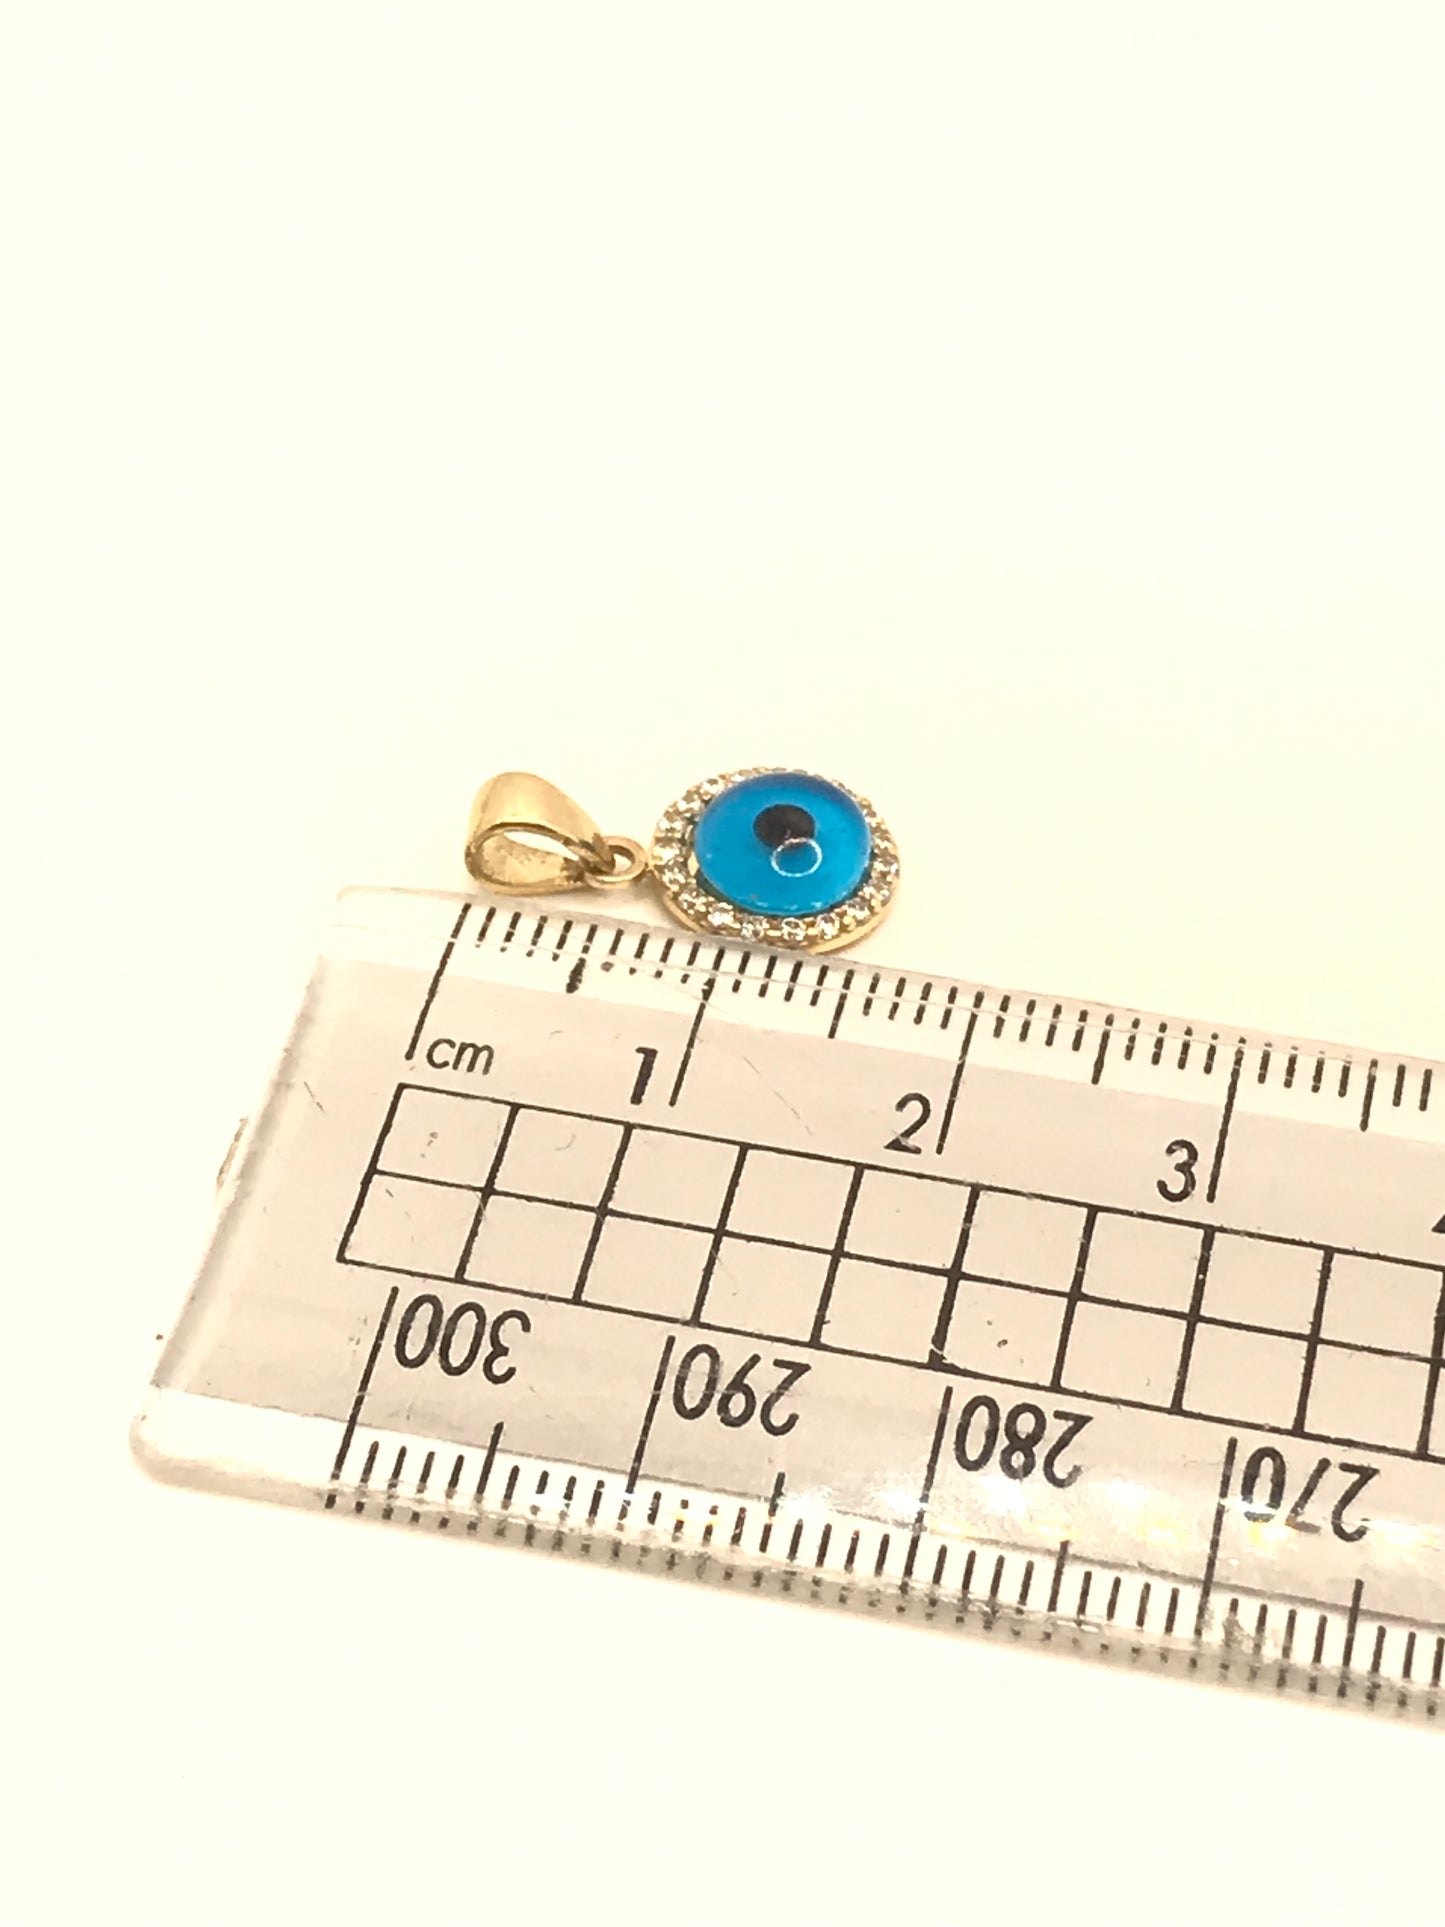 10k gold evil eye pendant